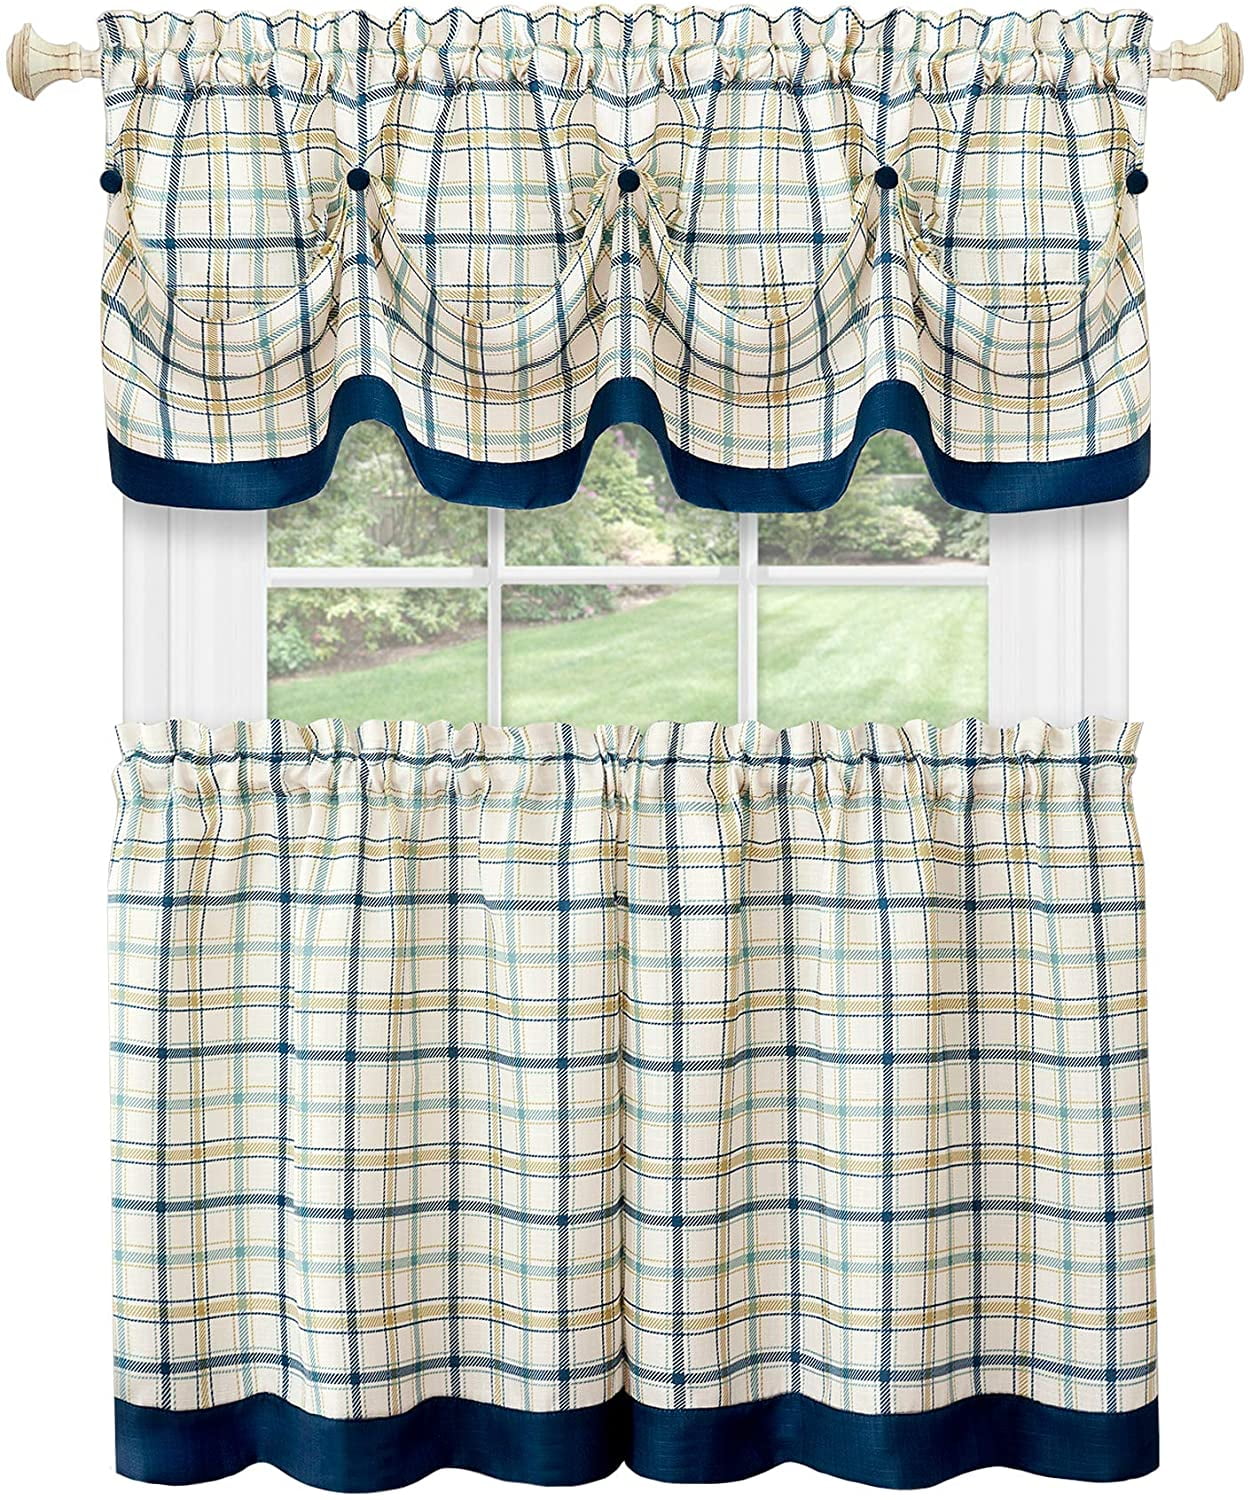 No 918 Blair Farmhouse Plaid Semi-Sheer Tab Top Kitchen Curtain Valance Charcoal/Ecru Off-White 52 x 14